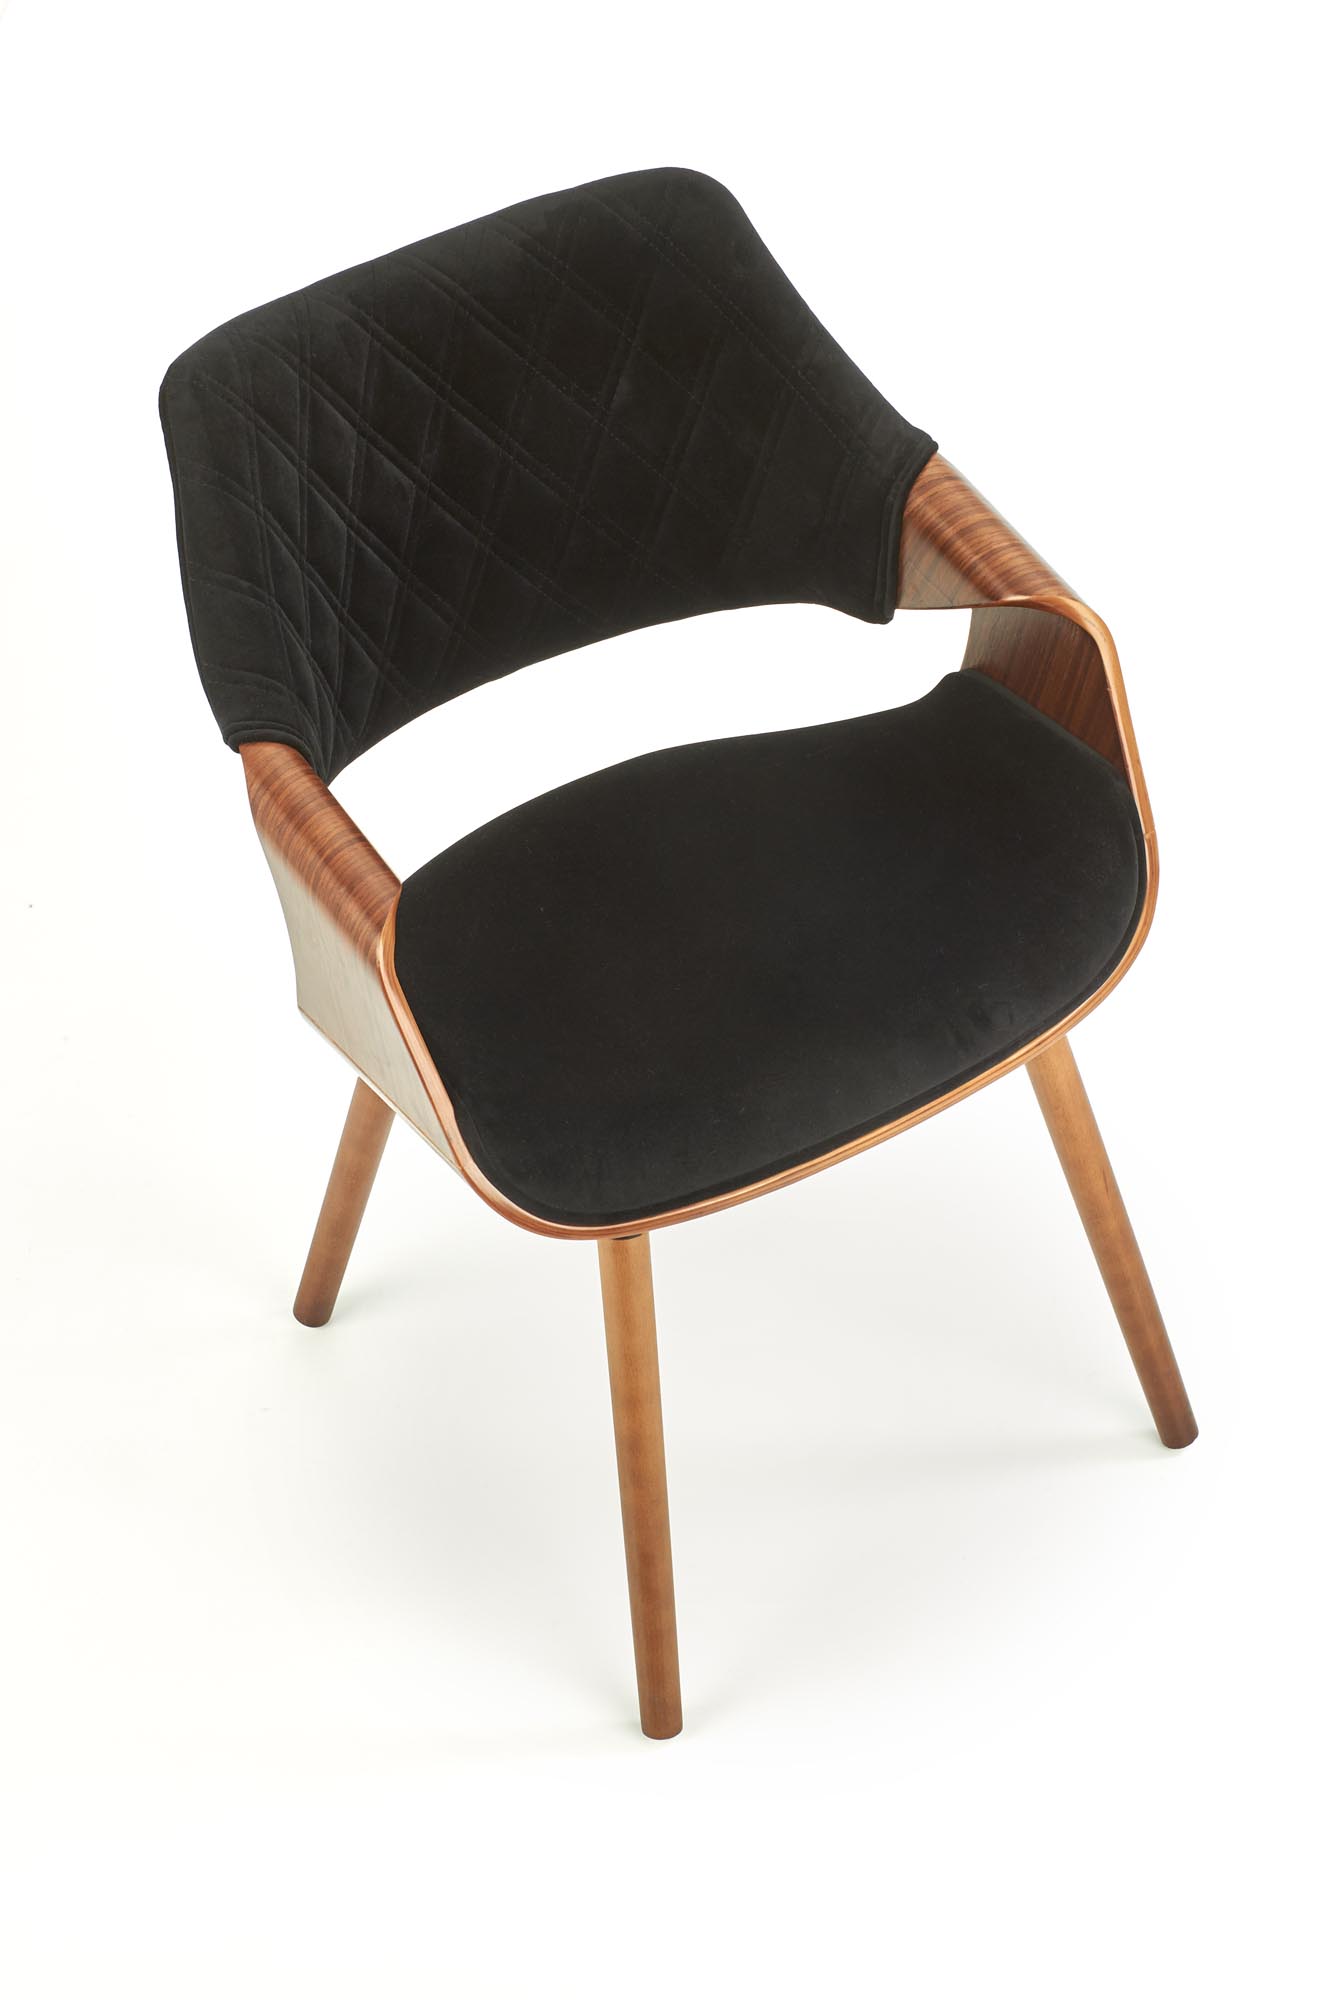 Krzesło tapicerowane K396 - orzechowy / czarny krzesło tapicerowane k396 - orzechowy / czarny